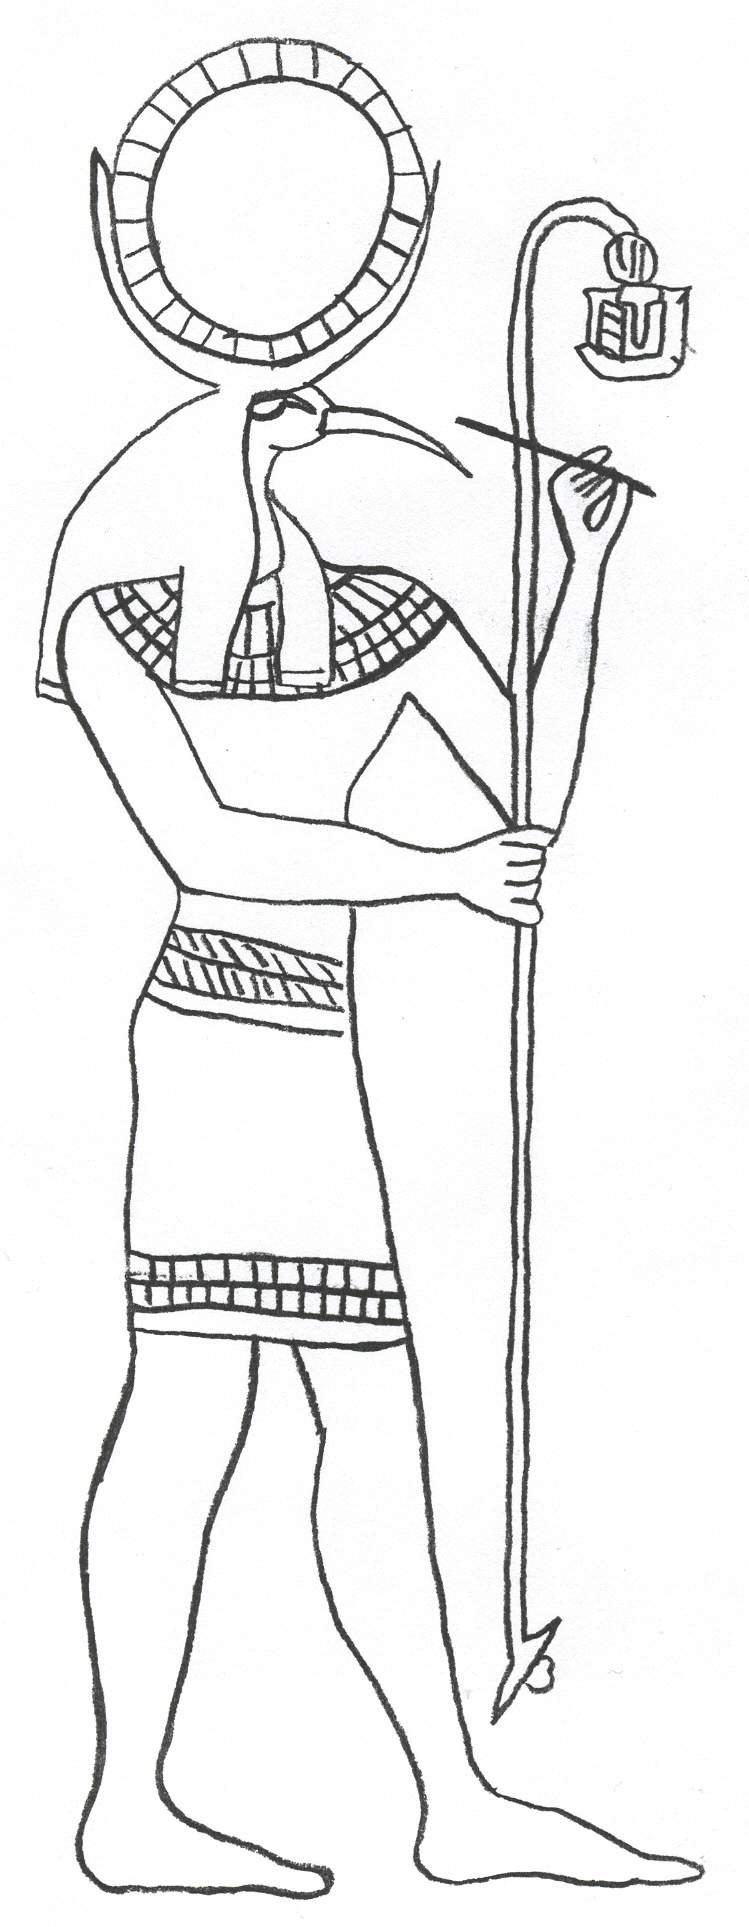 Раскраска древнего мира с богом египта, человеком головой птицы и шаром (боги)